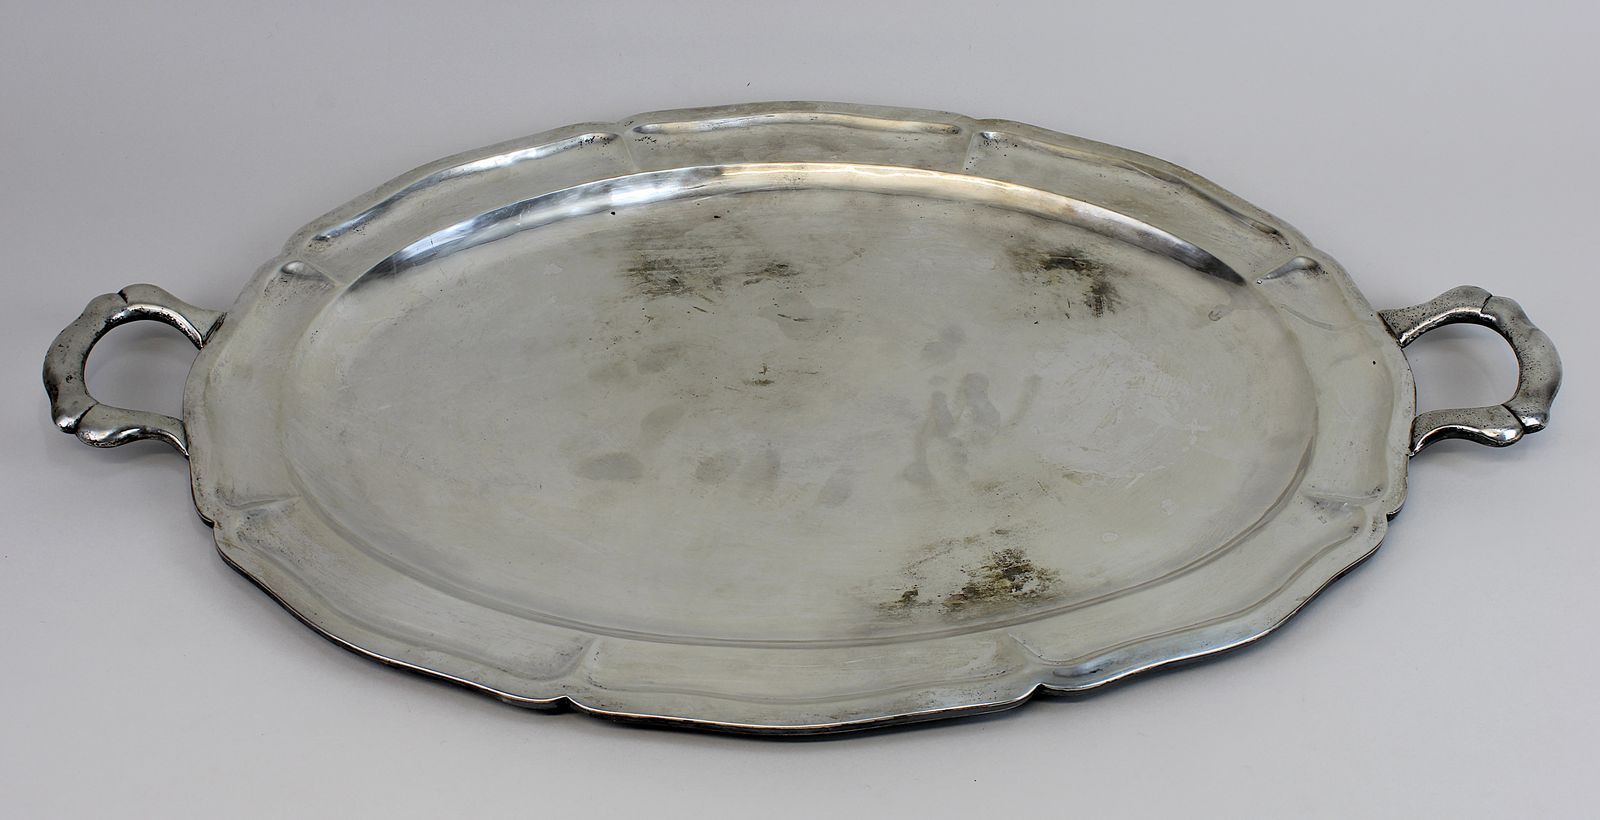 Henkeltablett, Mexiko 20. Jh., Sterling - Silber, im Barockstil, ovale Form, auf Boden gepunzt "